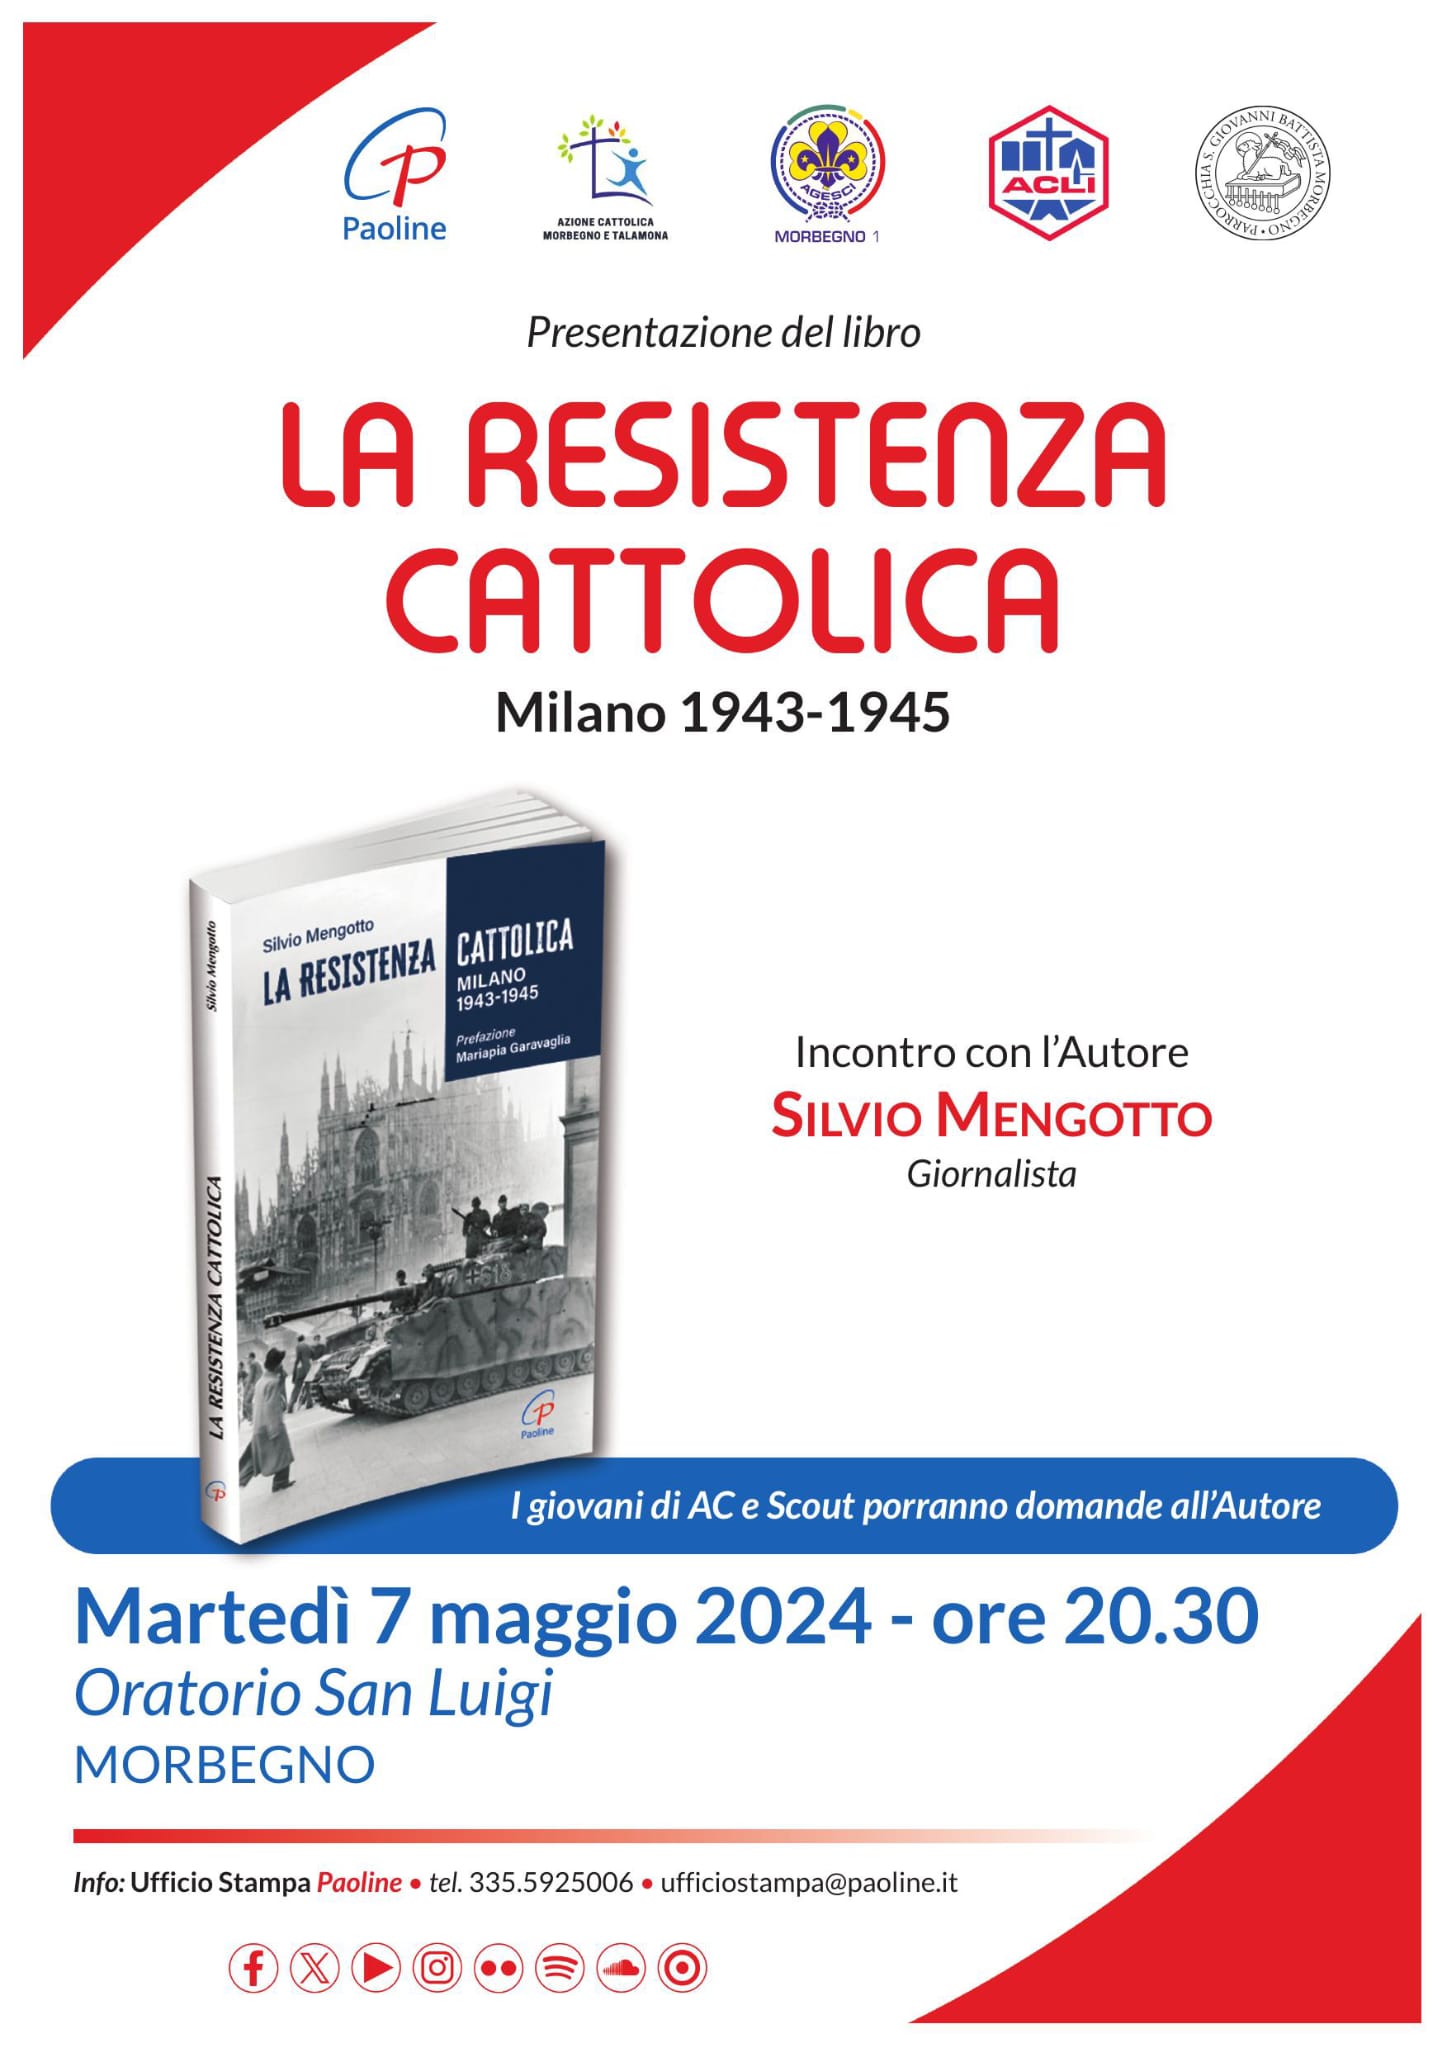 Presentazione del libro "La resistenza cattolica"